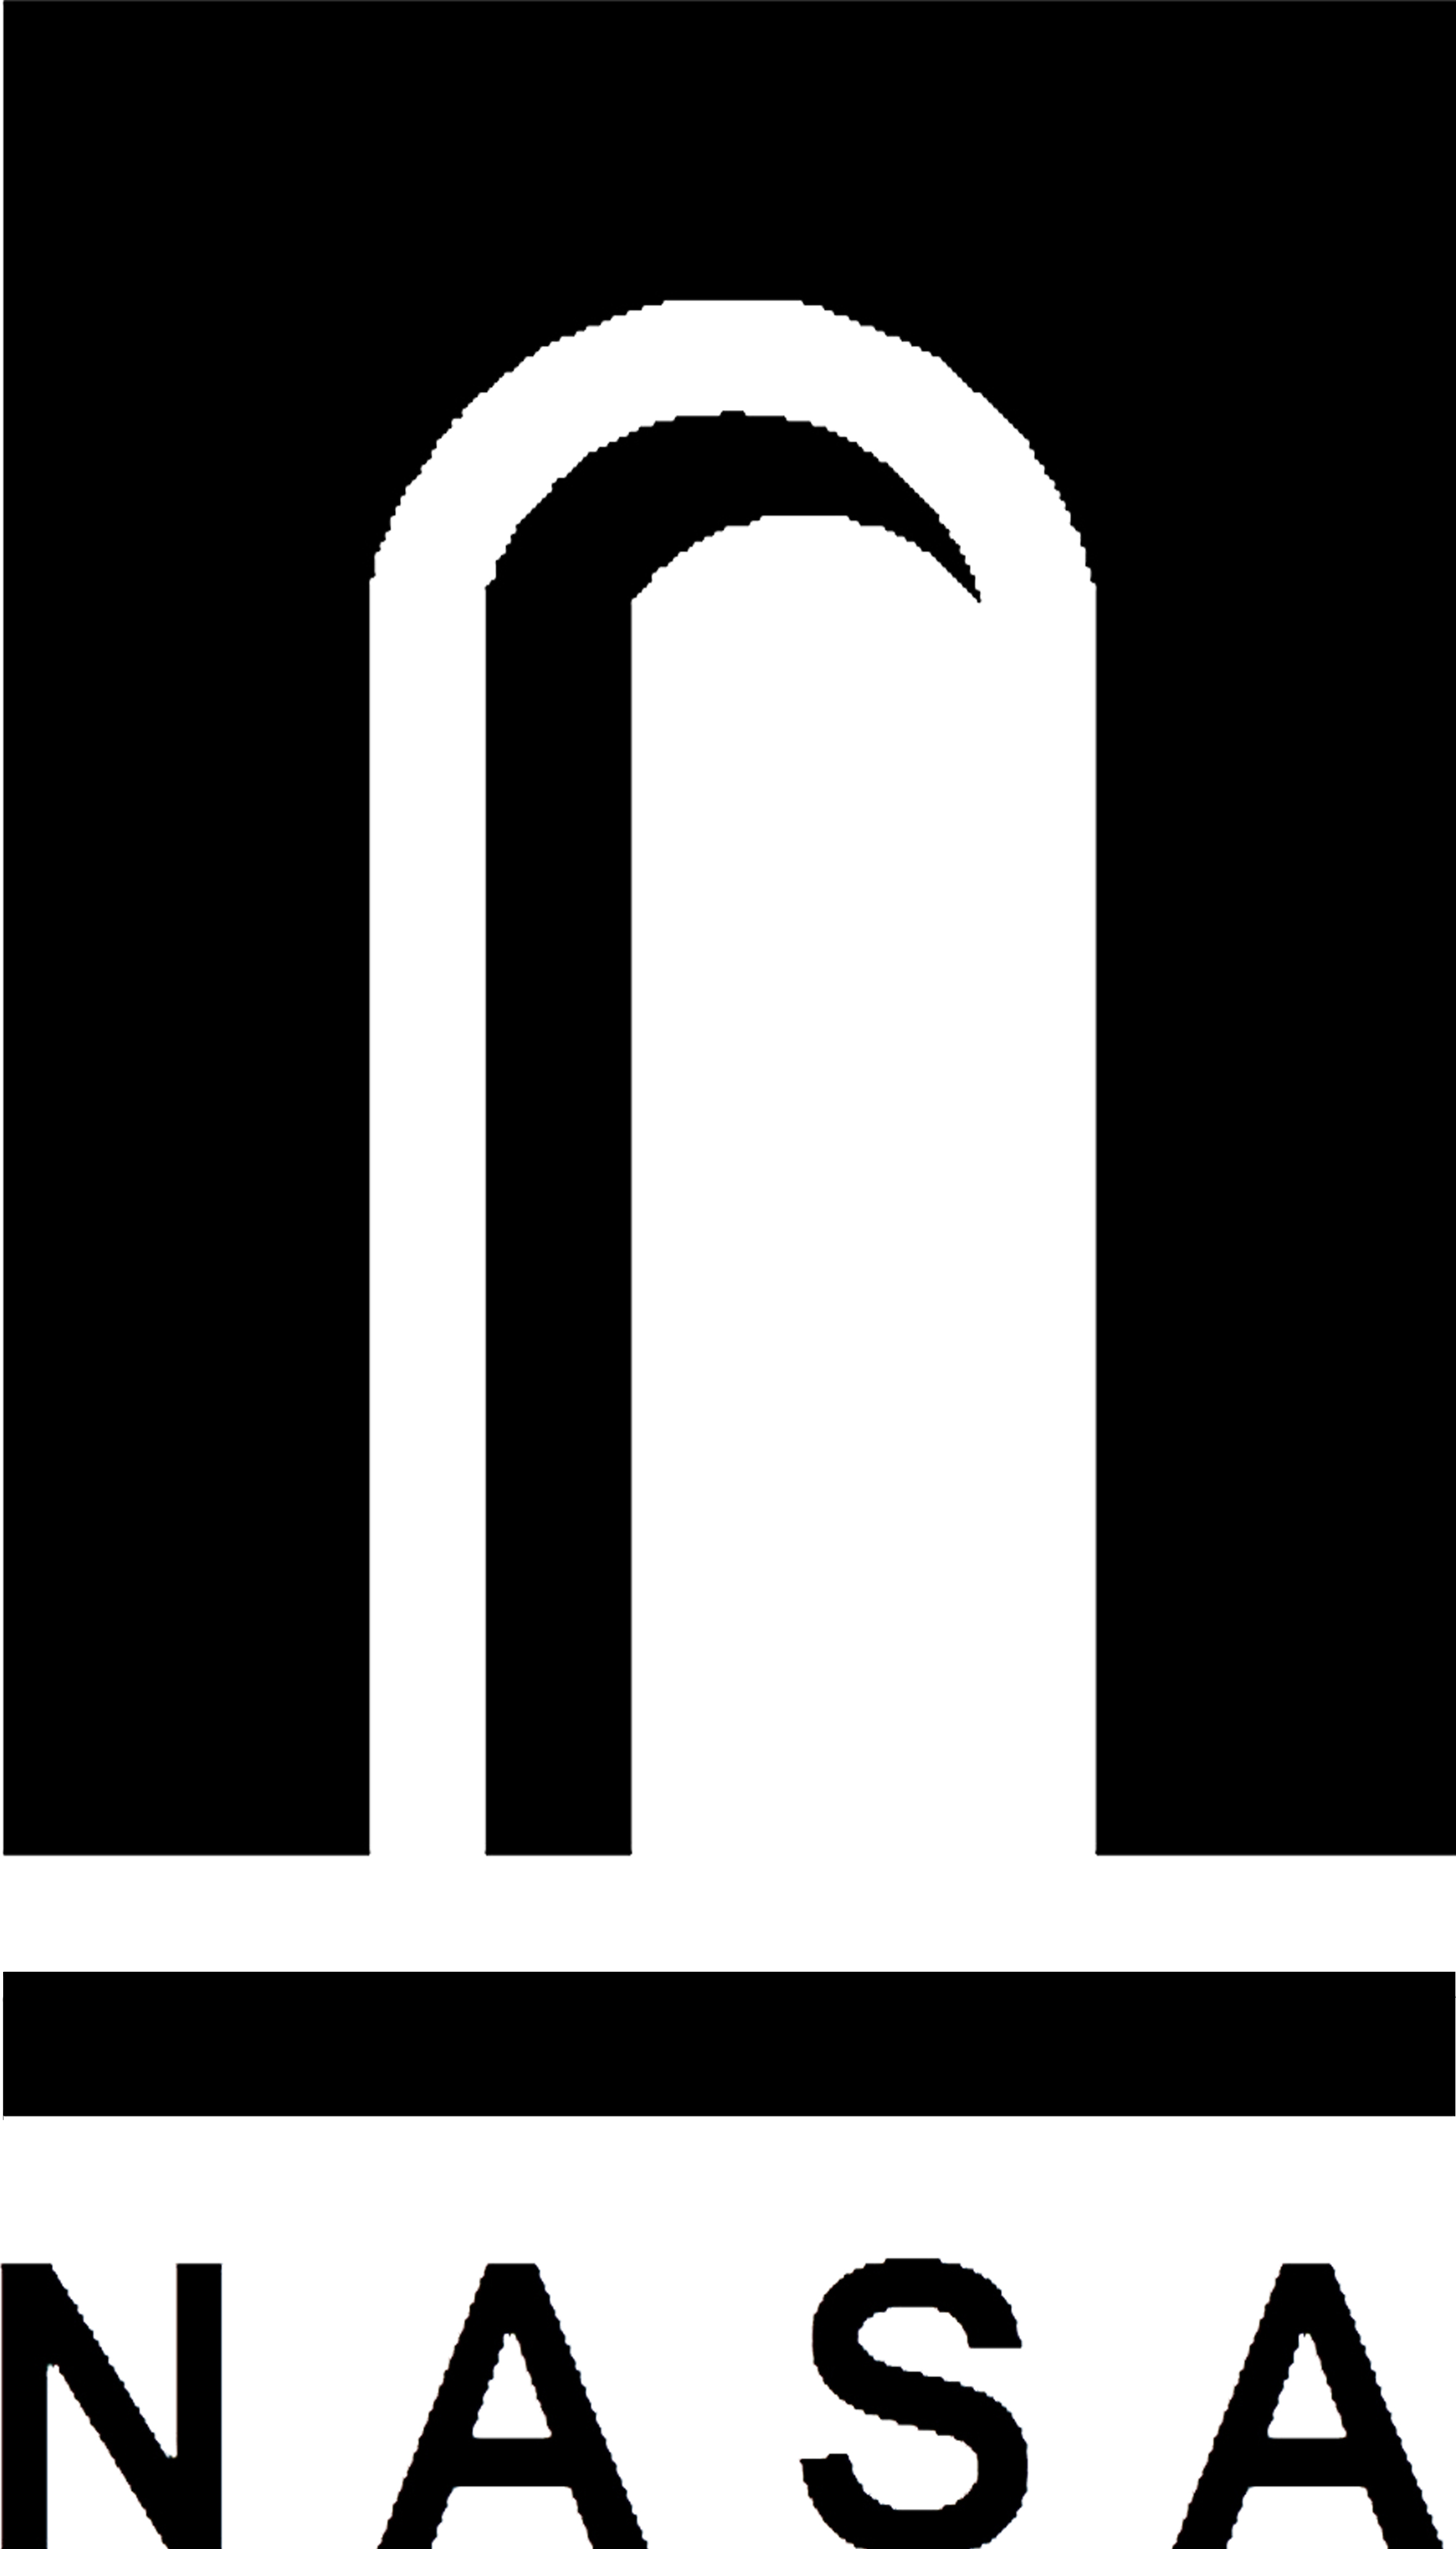 clip art nasa logo - photo #41